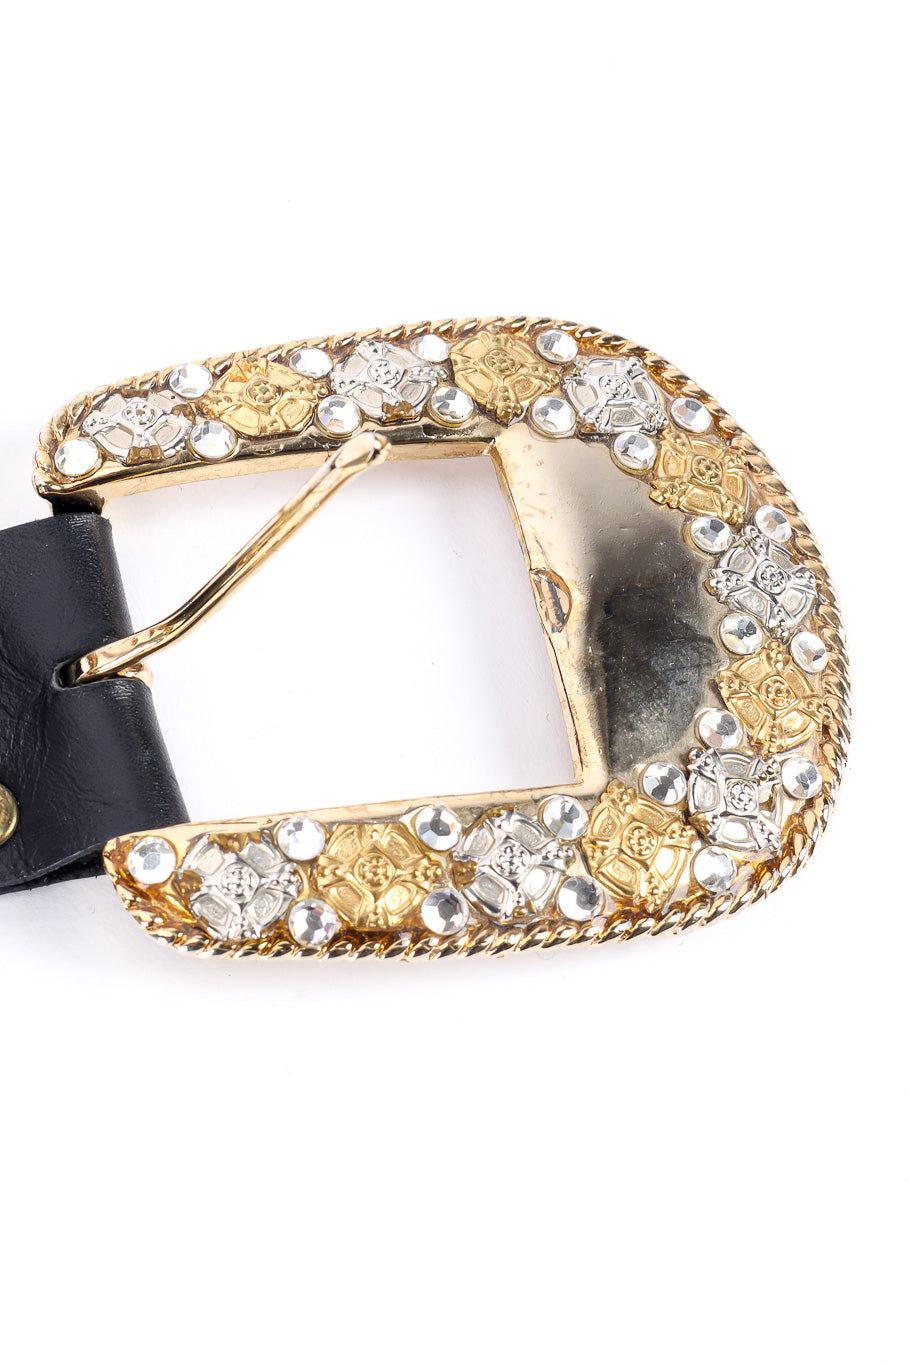 Michael Morrison crystal studded leather belt buckle details @recessla